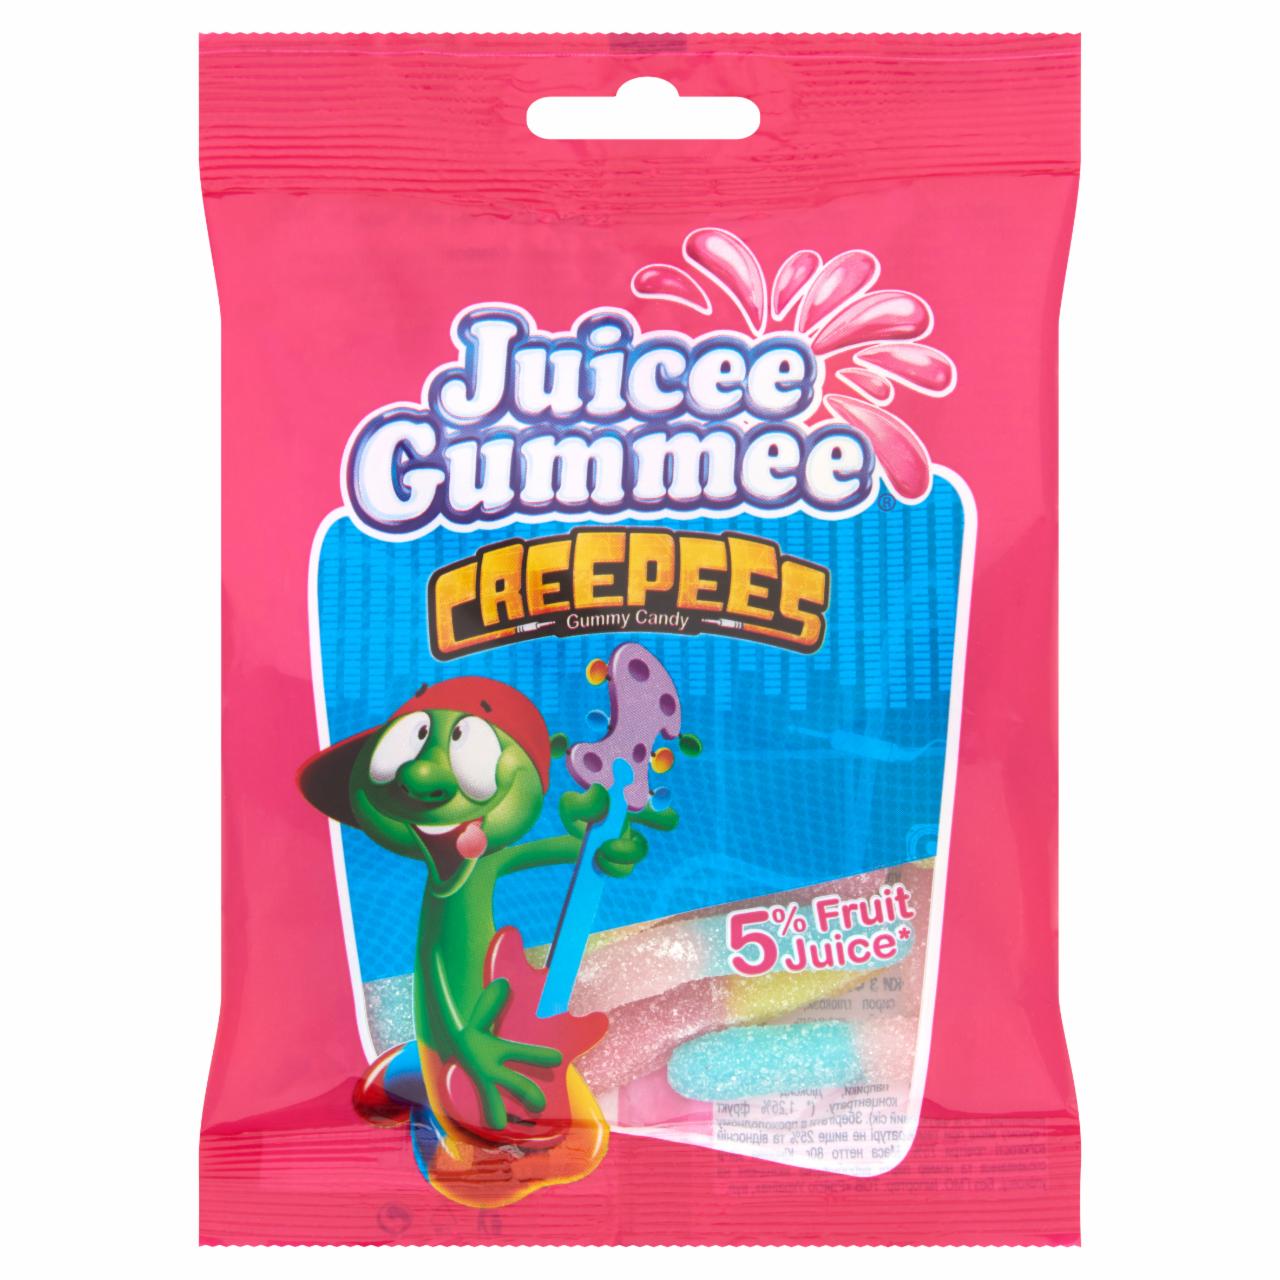 Képek - Juicee Gummee Creepees neon gumigiliszta gyümölcsös ízű gumicukor 80 g